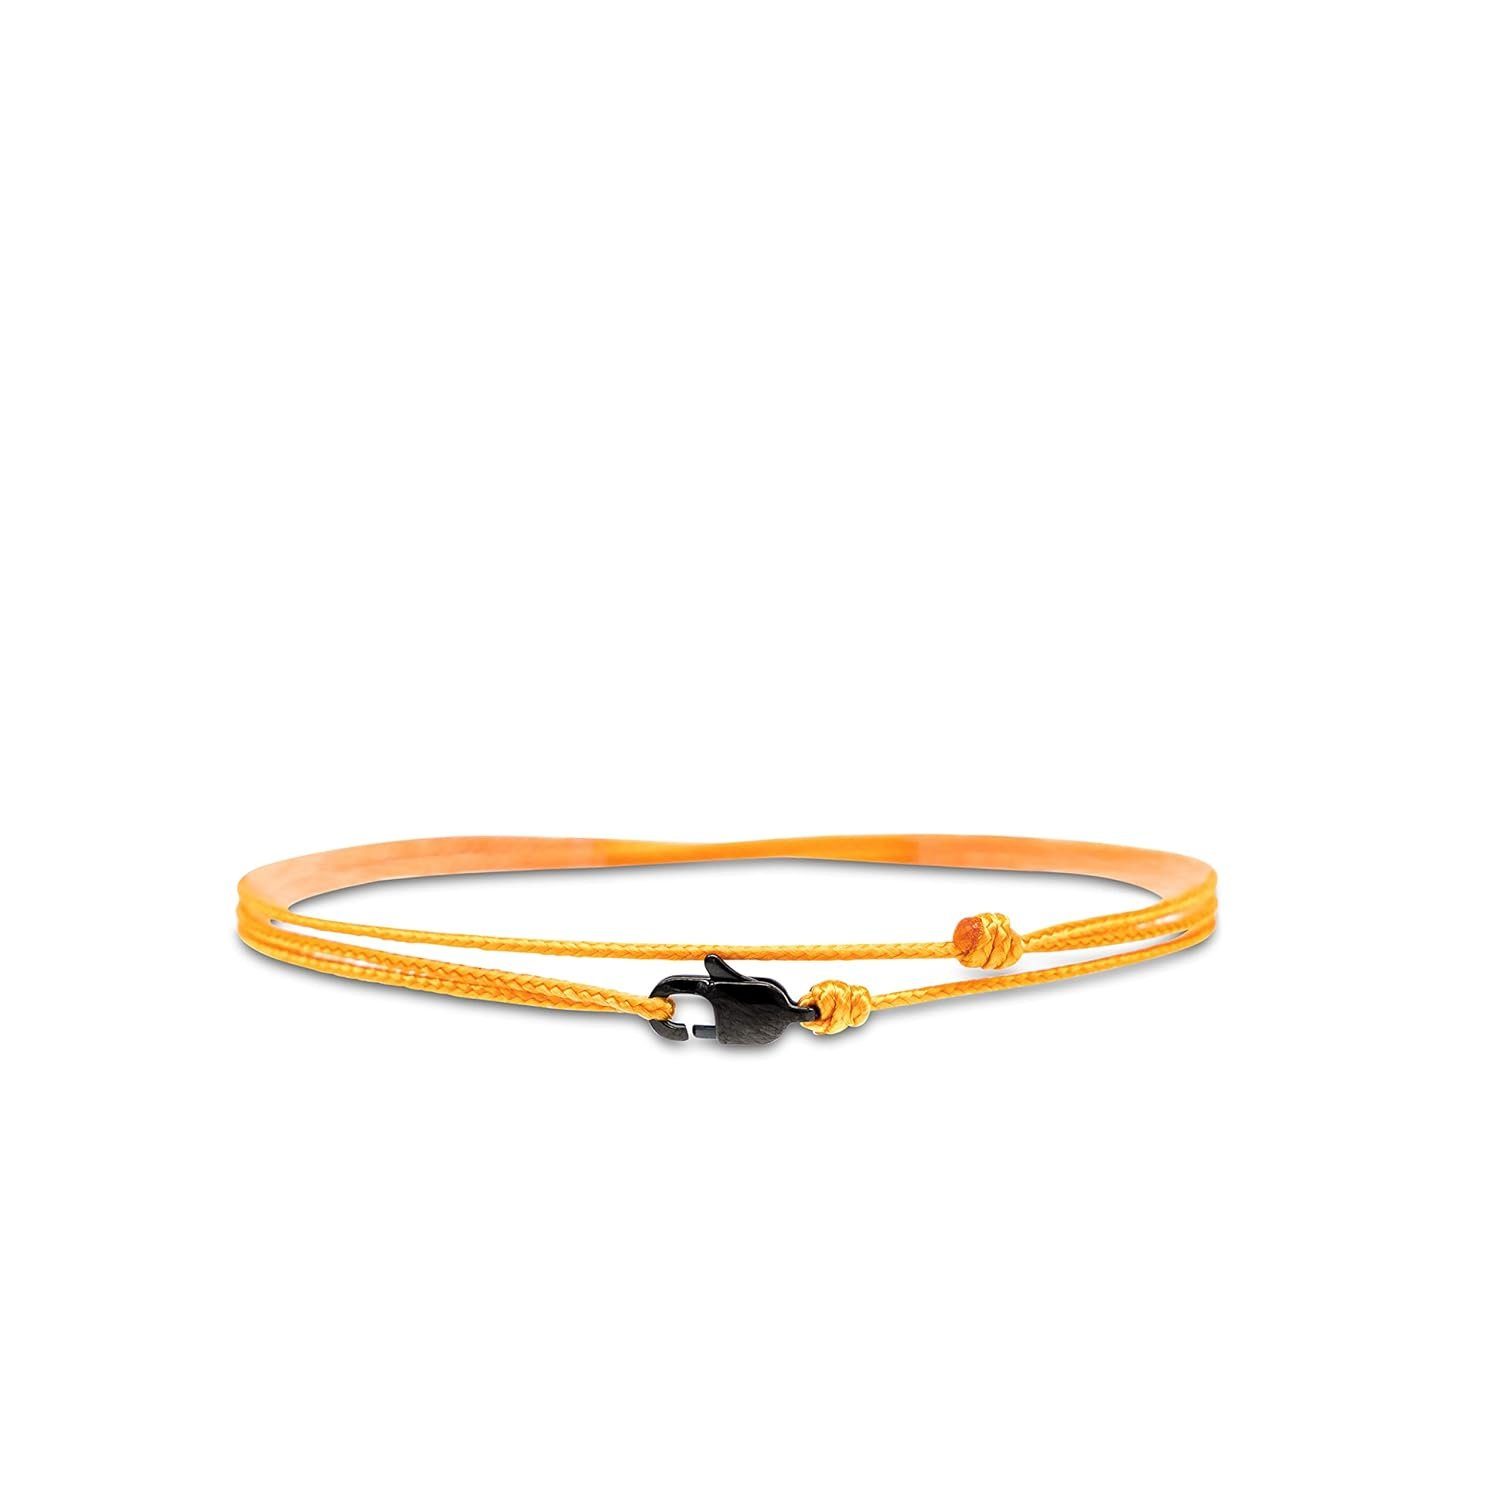 Made by Nami Wickelarmband Minimalistisches Armband mit Karabinerhaken Herren Armband Damen, Maritimes Armband Wasserfest & Verstellbar Orange u Schwarz